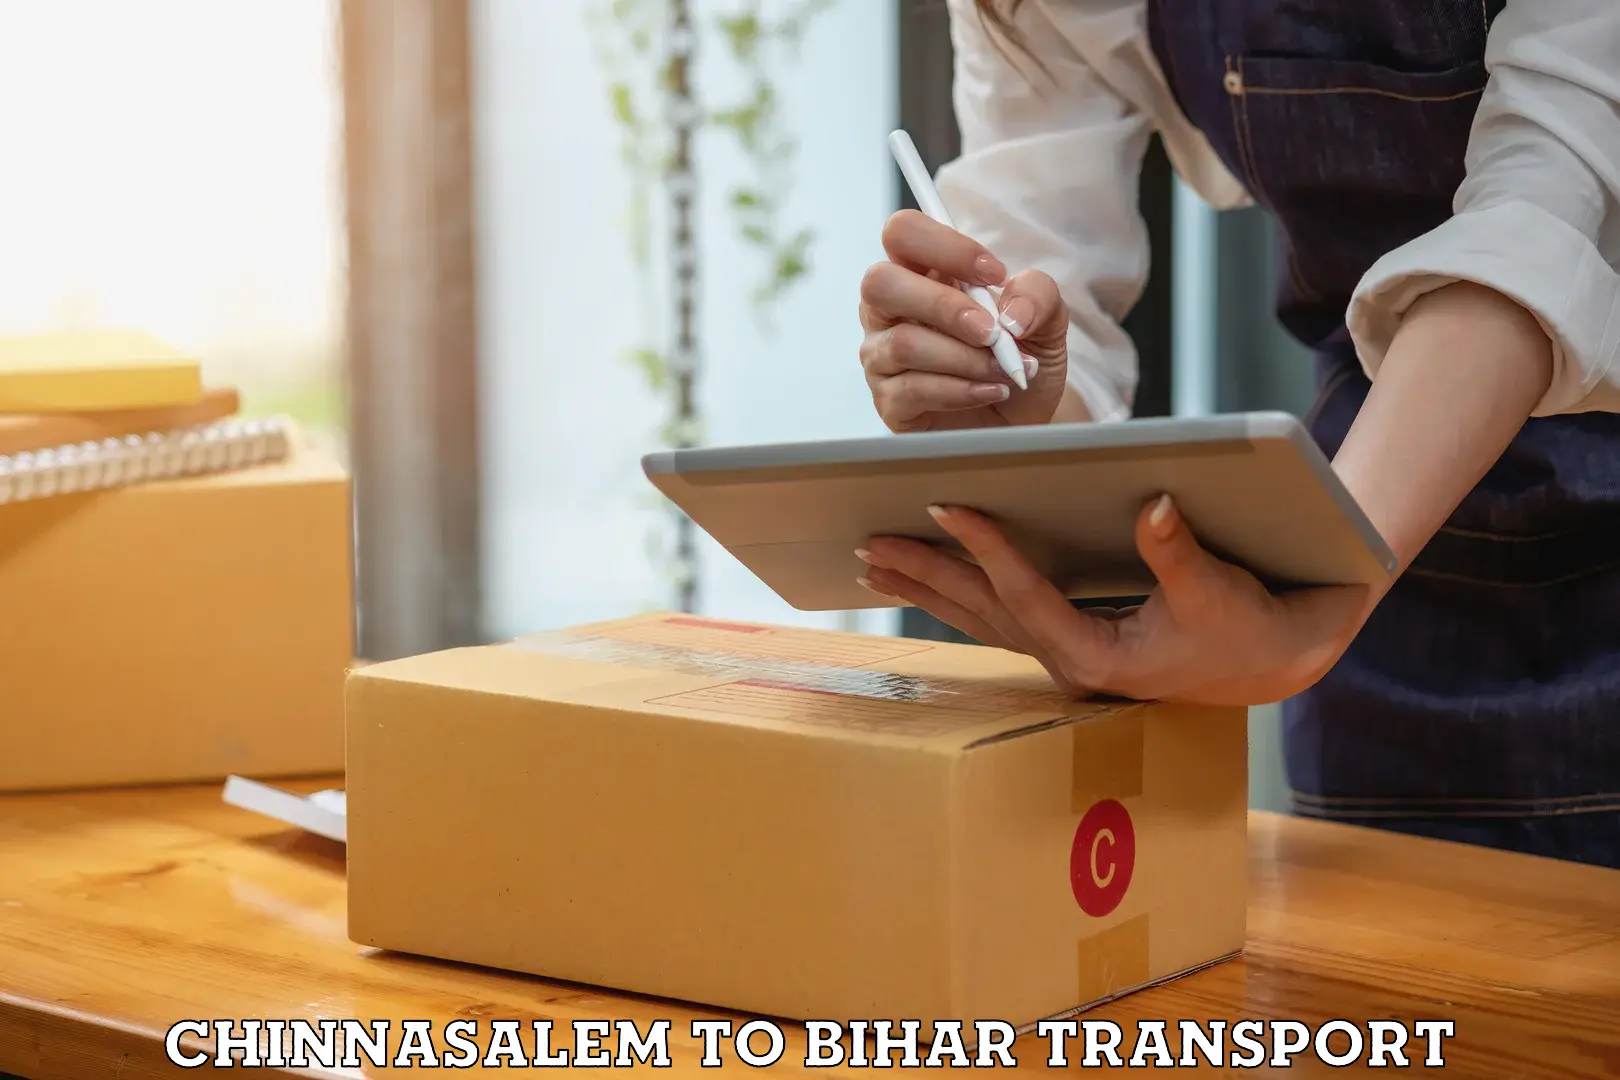 International cargo transportation services Chinnasalem to Thakurganj